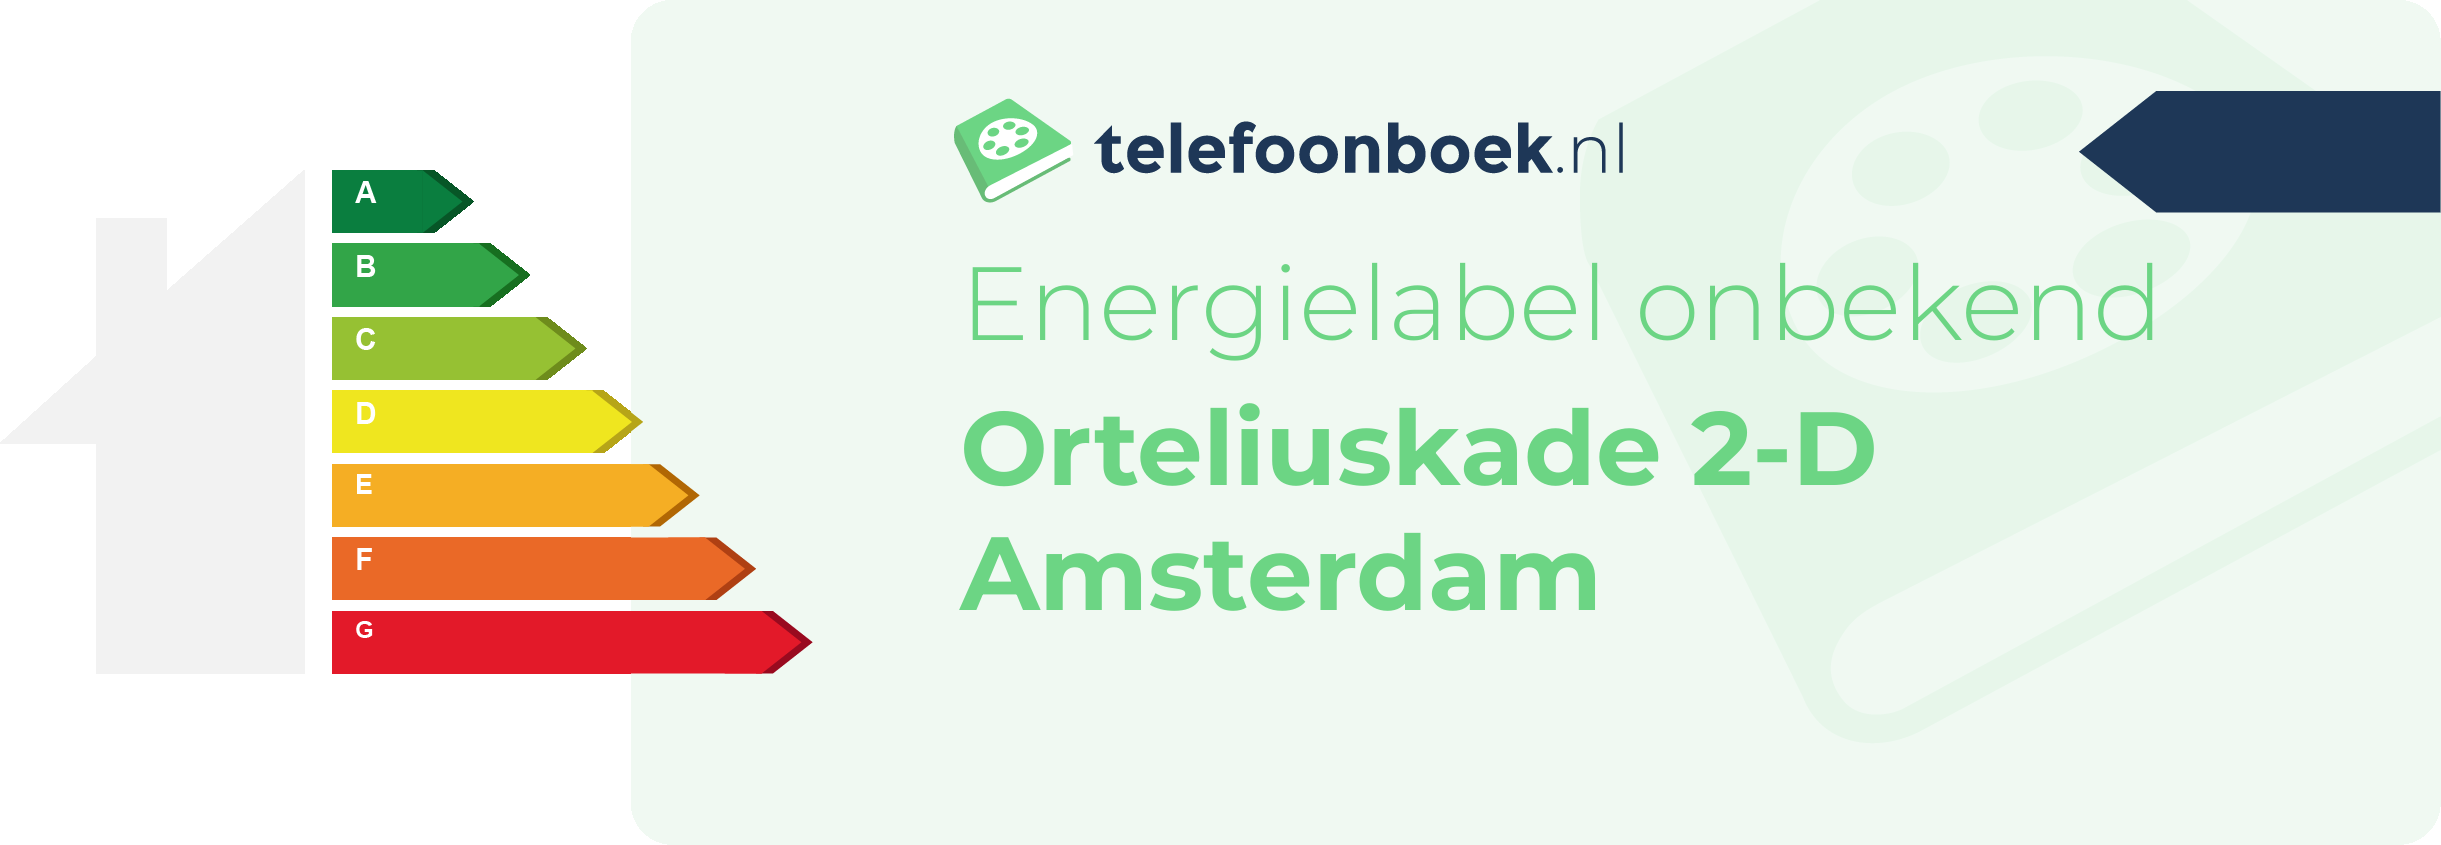 Energielabel Orteliuskade 2-D Amsterdam